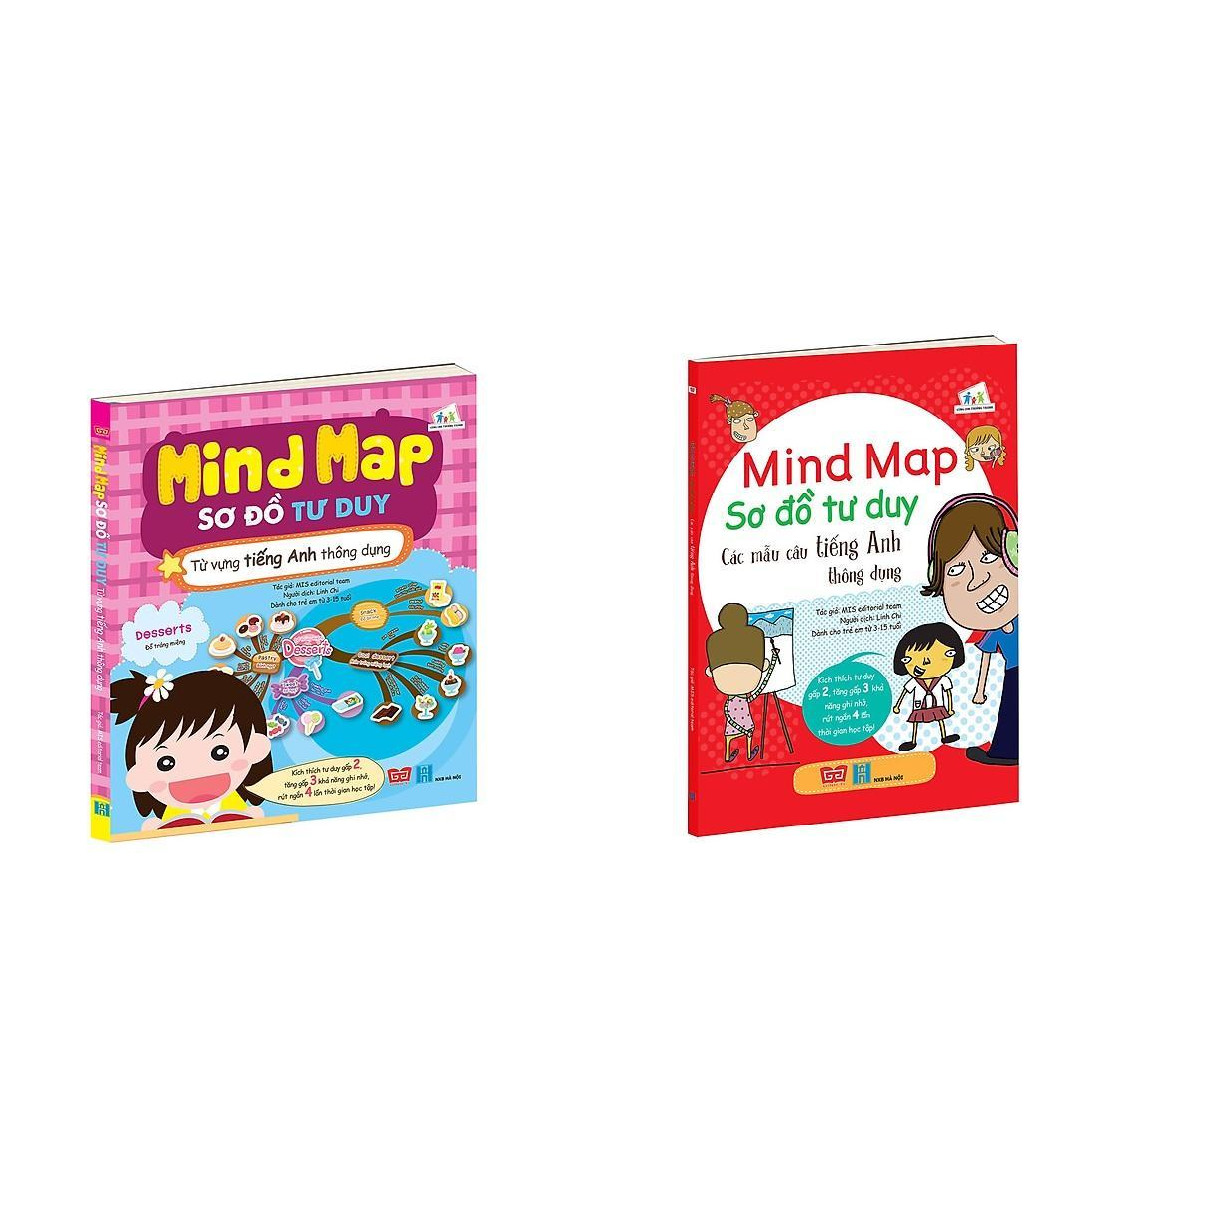 Combo 2 Cuốn sách giúp bạn học tiếng Anh nhanh hơn, hiệu quả hơn và nhớ lâu hơn: Mind Map - Sơ đồ tư duy - Các mẫu câu tiếng Anh thông dụng + Từ vựng tiếng Anh thông dụng